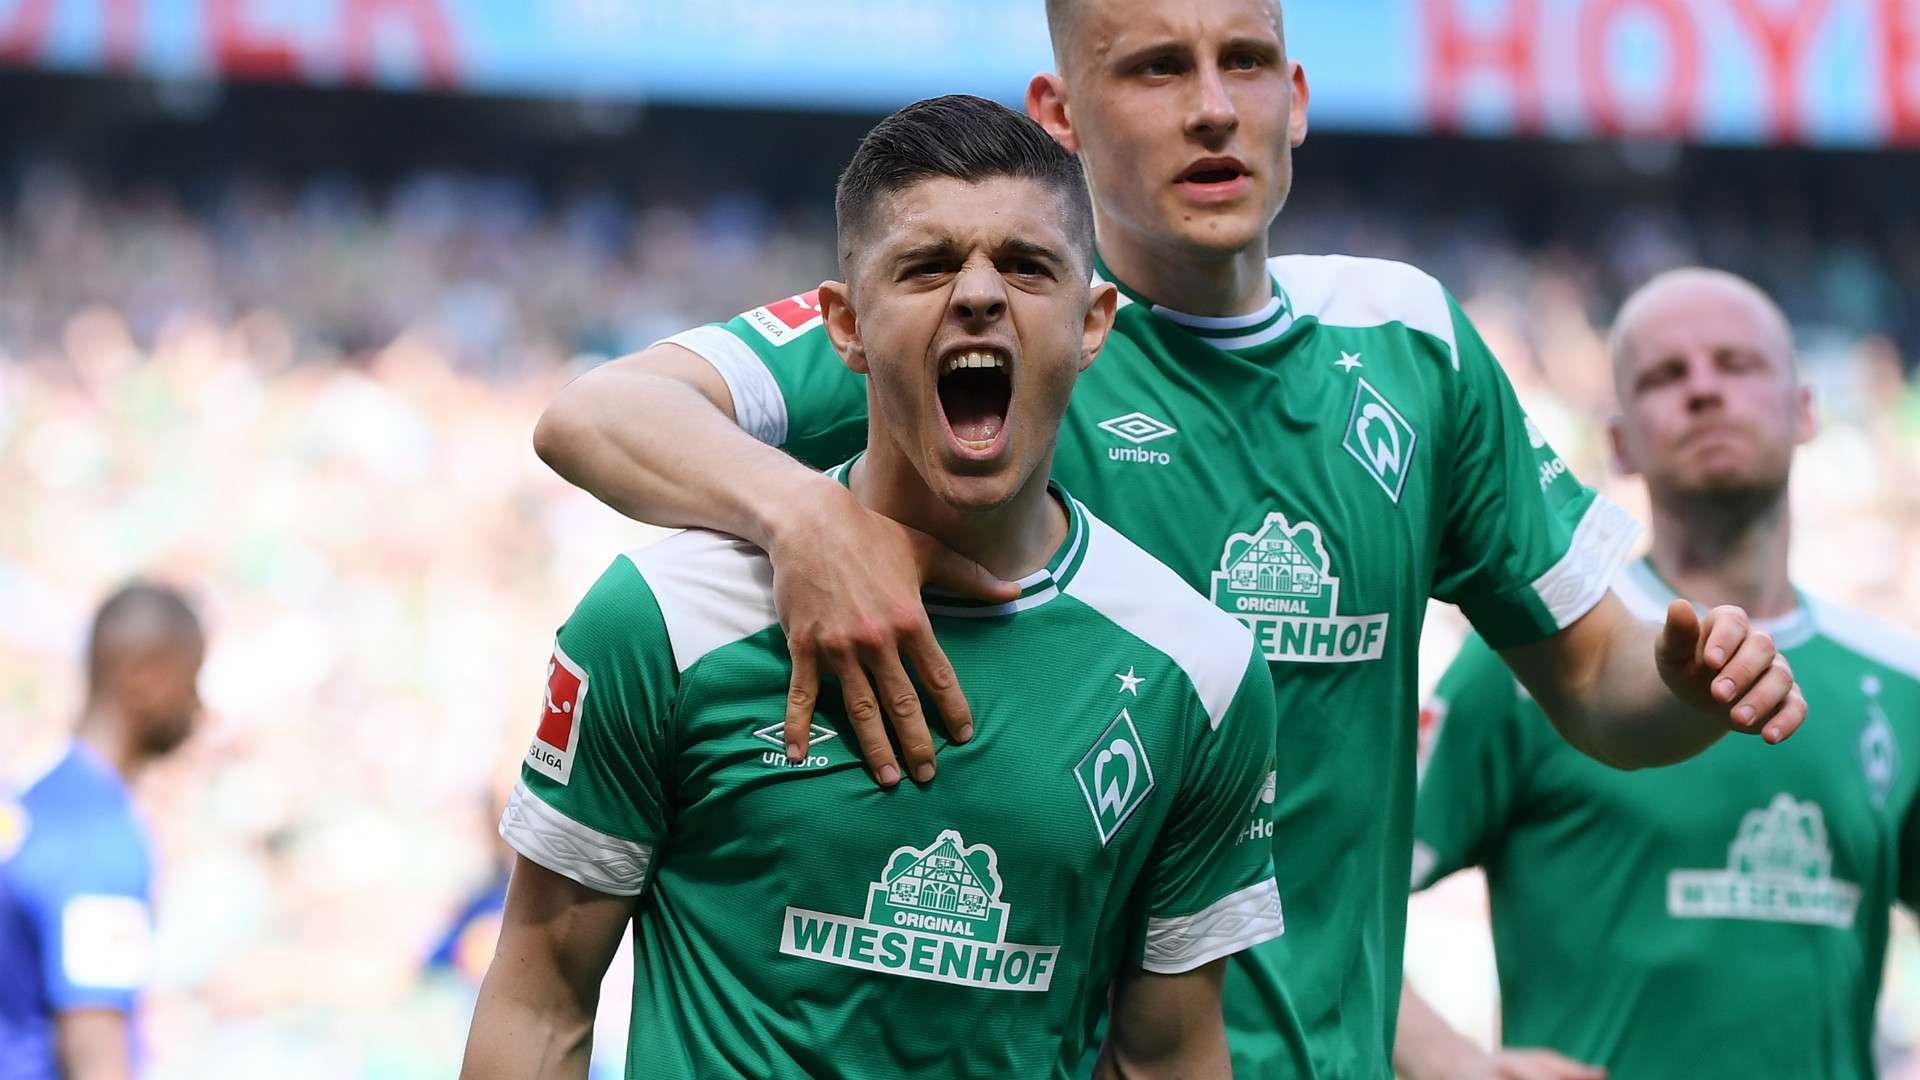 Një ditë para rifillimit të Bundesligës, izolohet futbollisti i Werder Bremenit